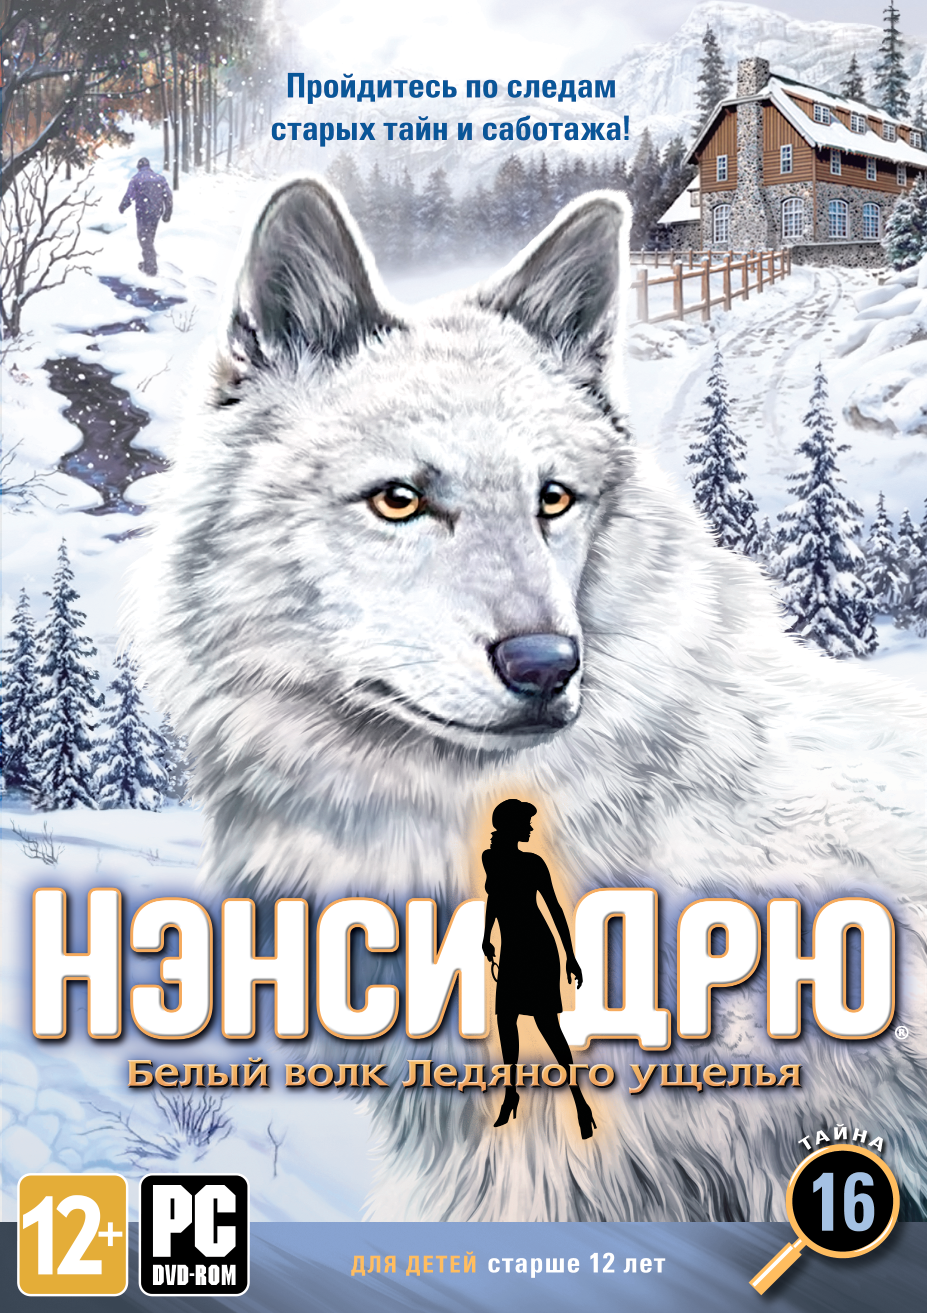 Ледяные волки книга